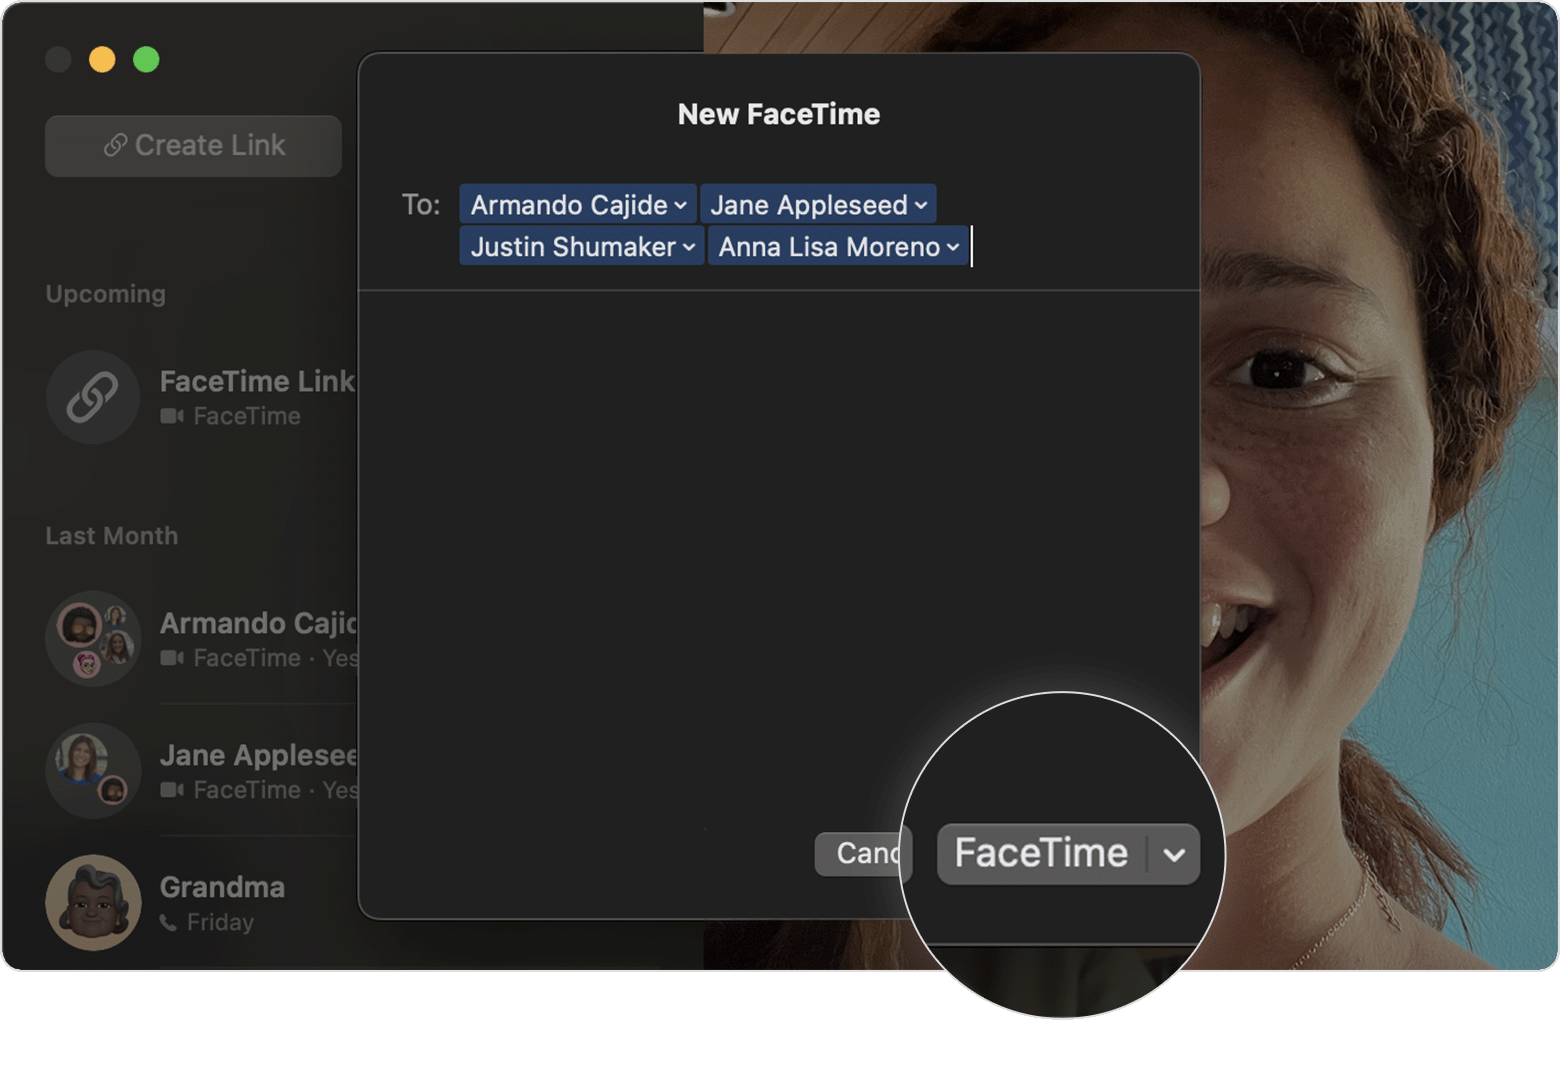 向一群人啟動 FaceTime 通話：已圈起 FaceTime 按鈕